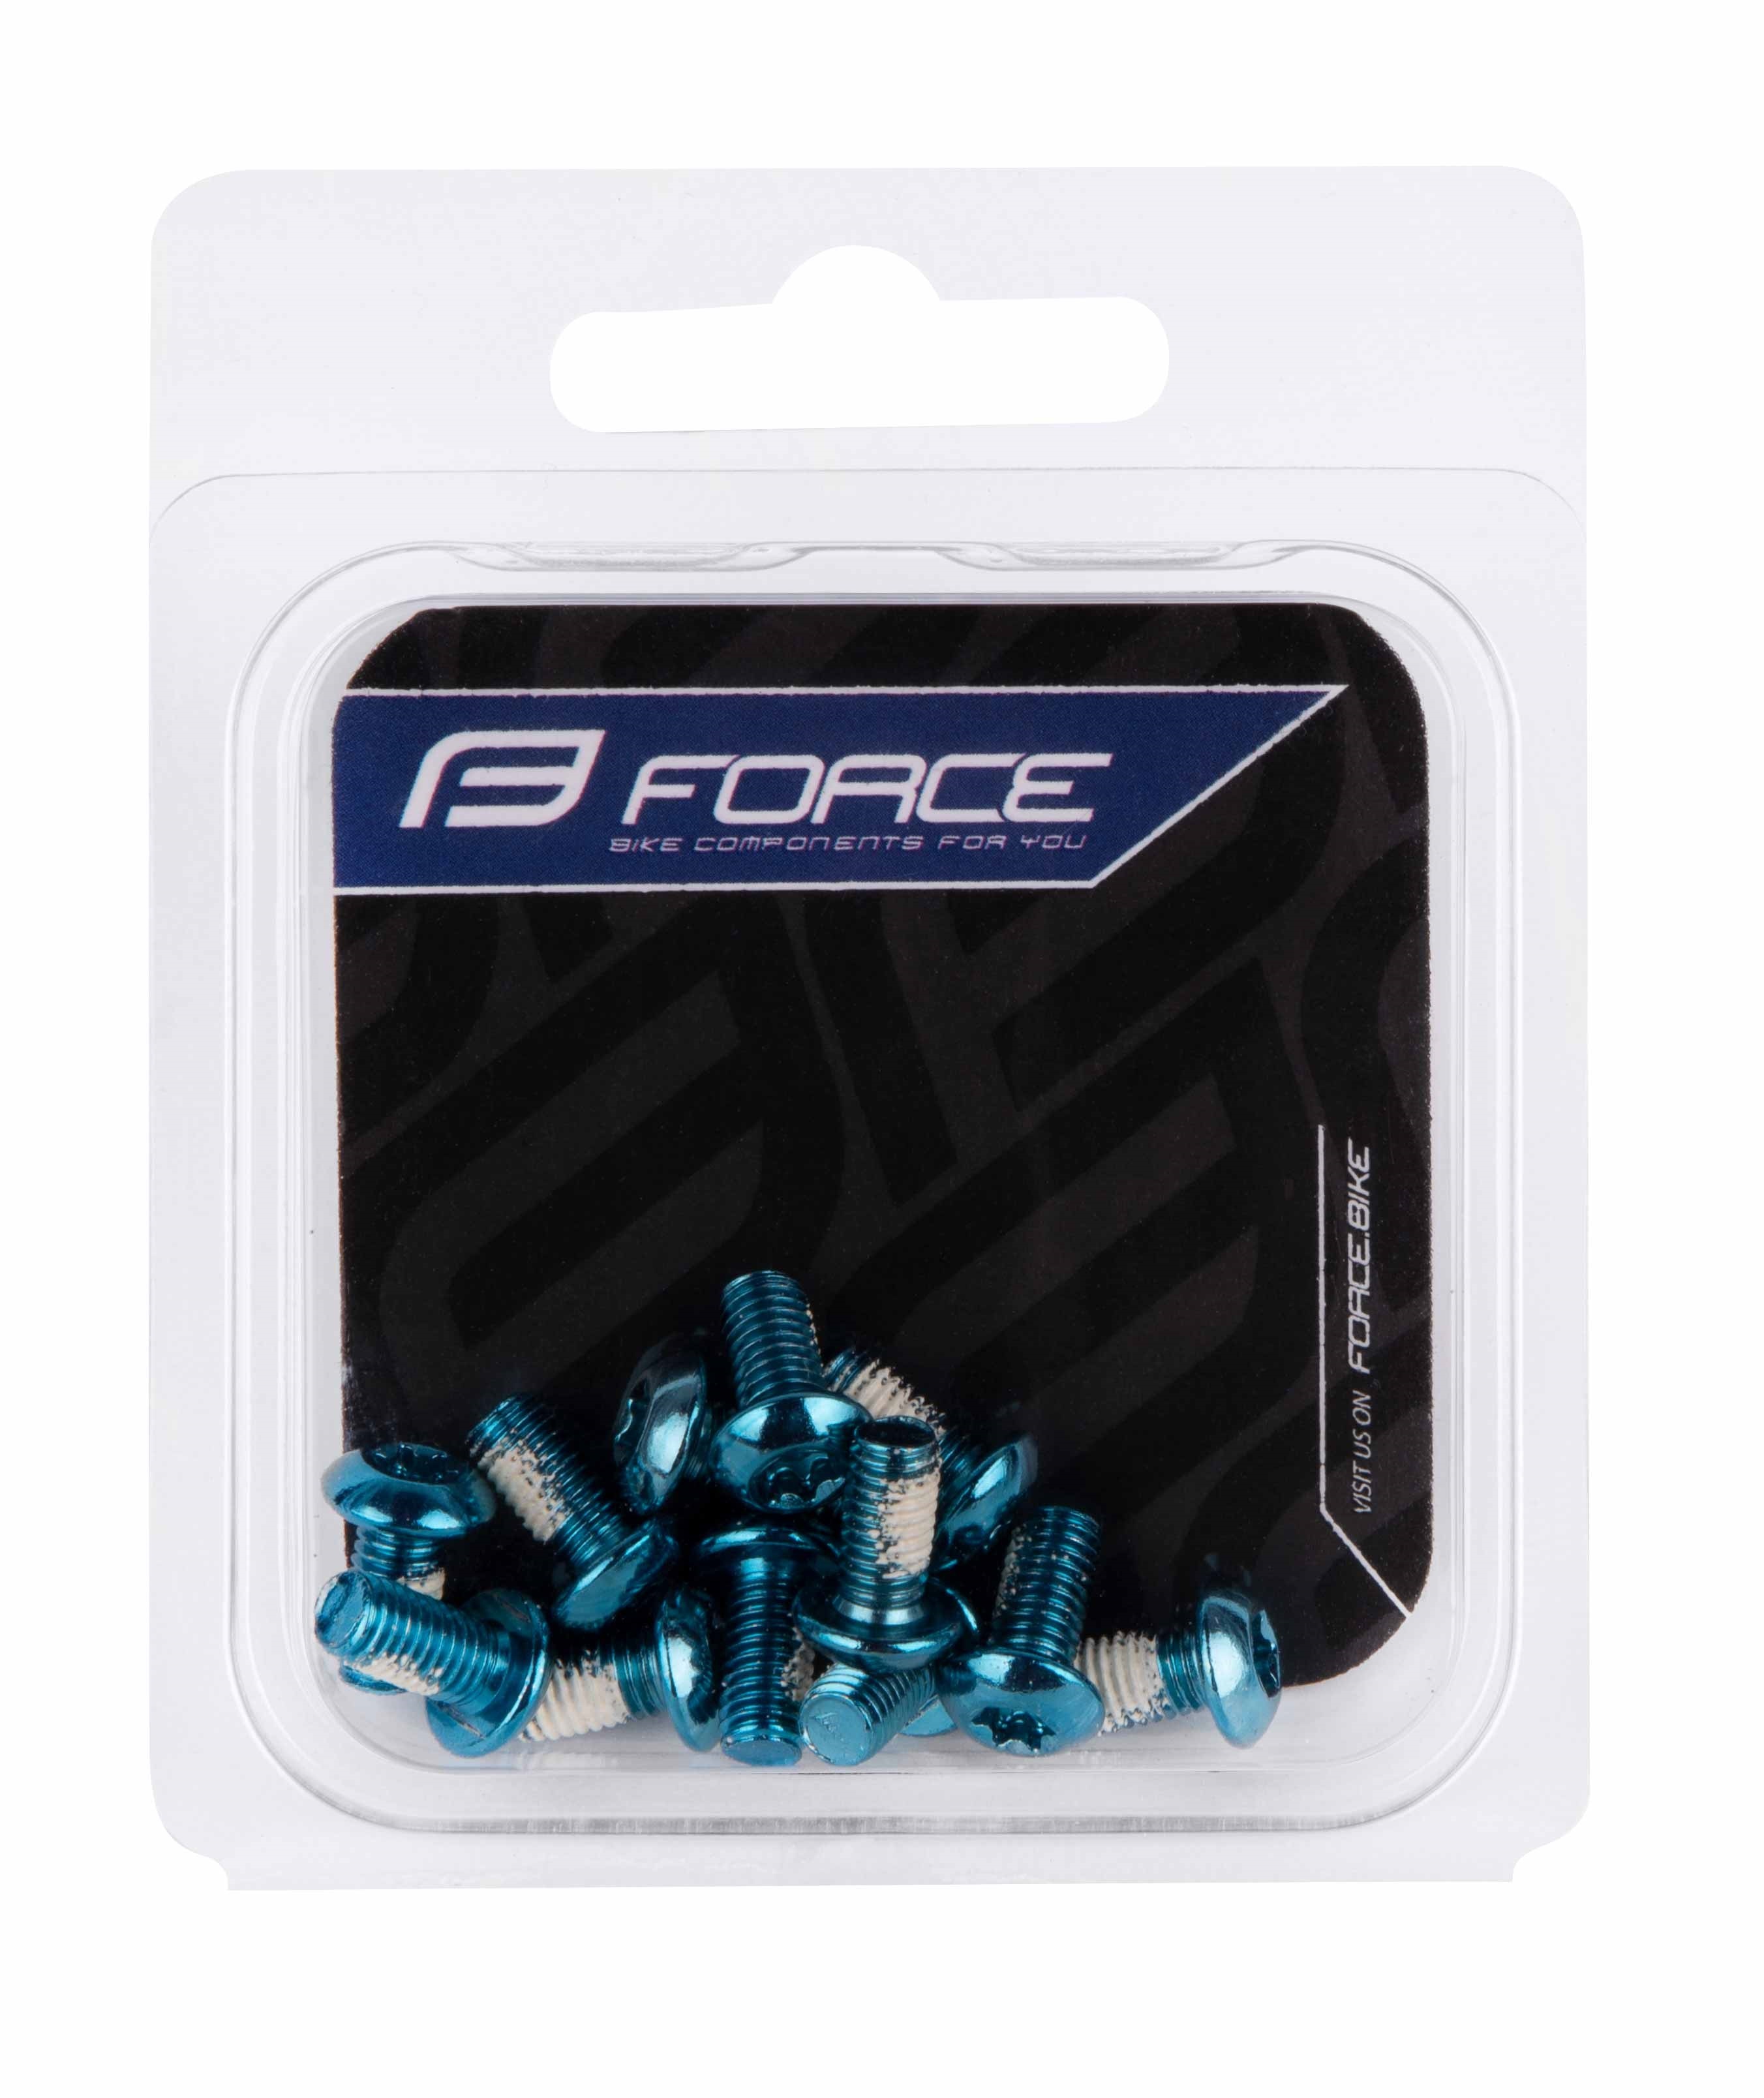 Force śruby anodowane torx 25 12 szt, niebieskie 424345